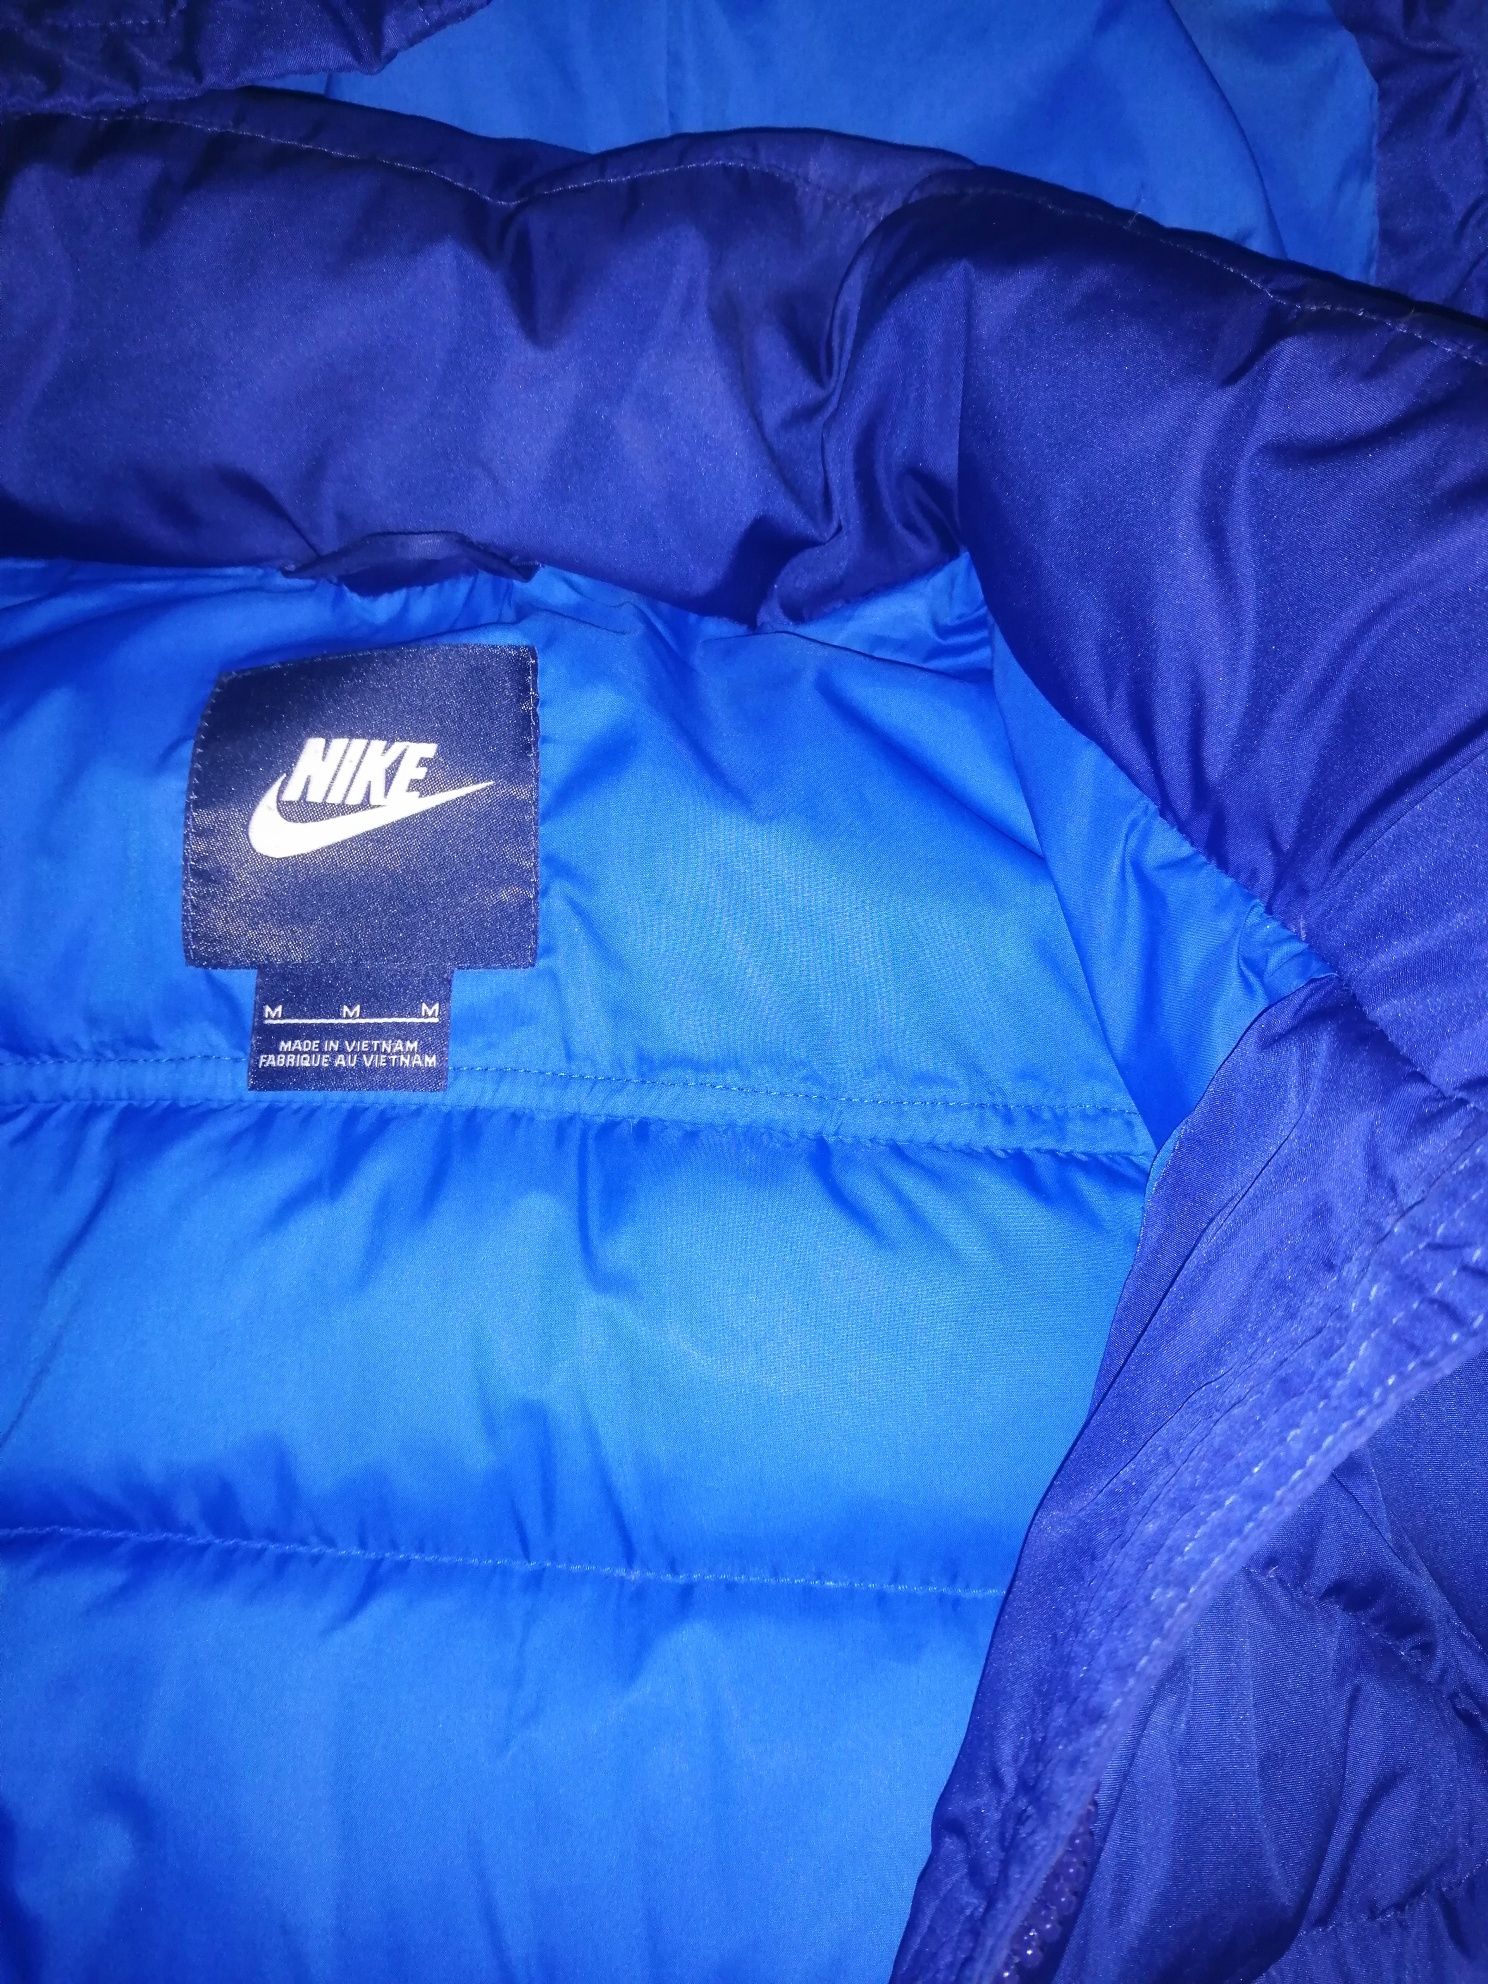 Женская куртка, пальто Nike оригинал